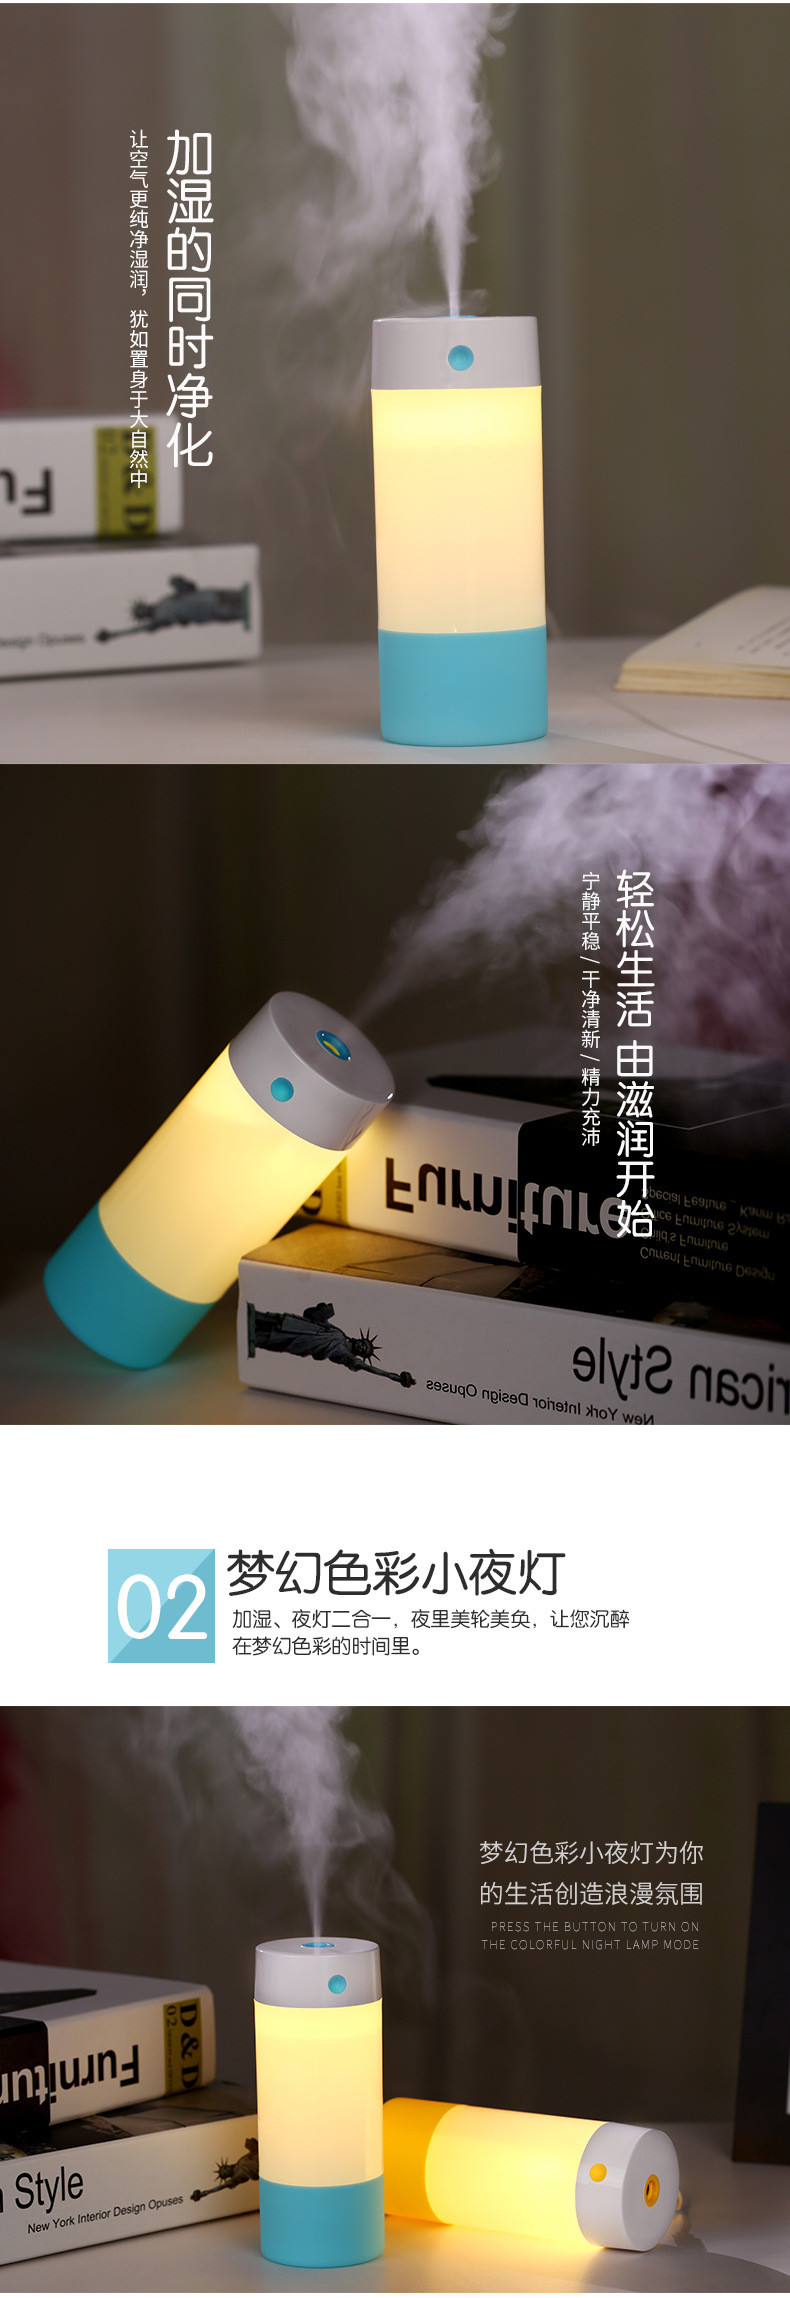 艾米酷USB加湿器 迷你空气净化加湿器 创意卧室夜灯小加湿器